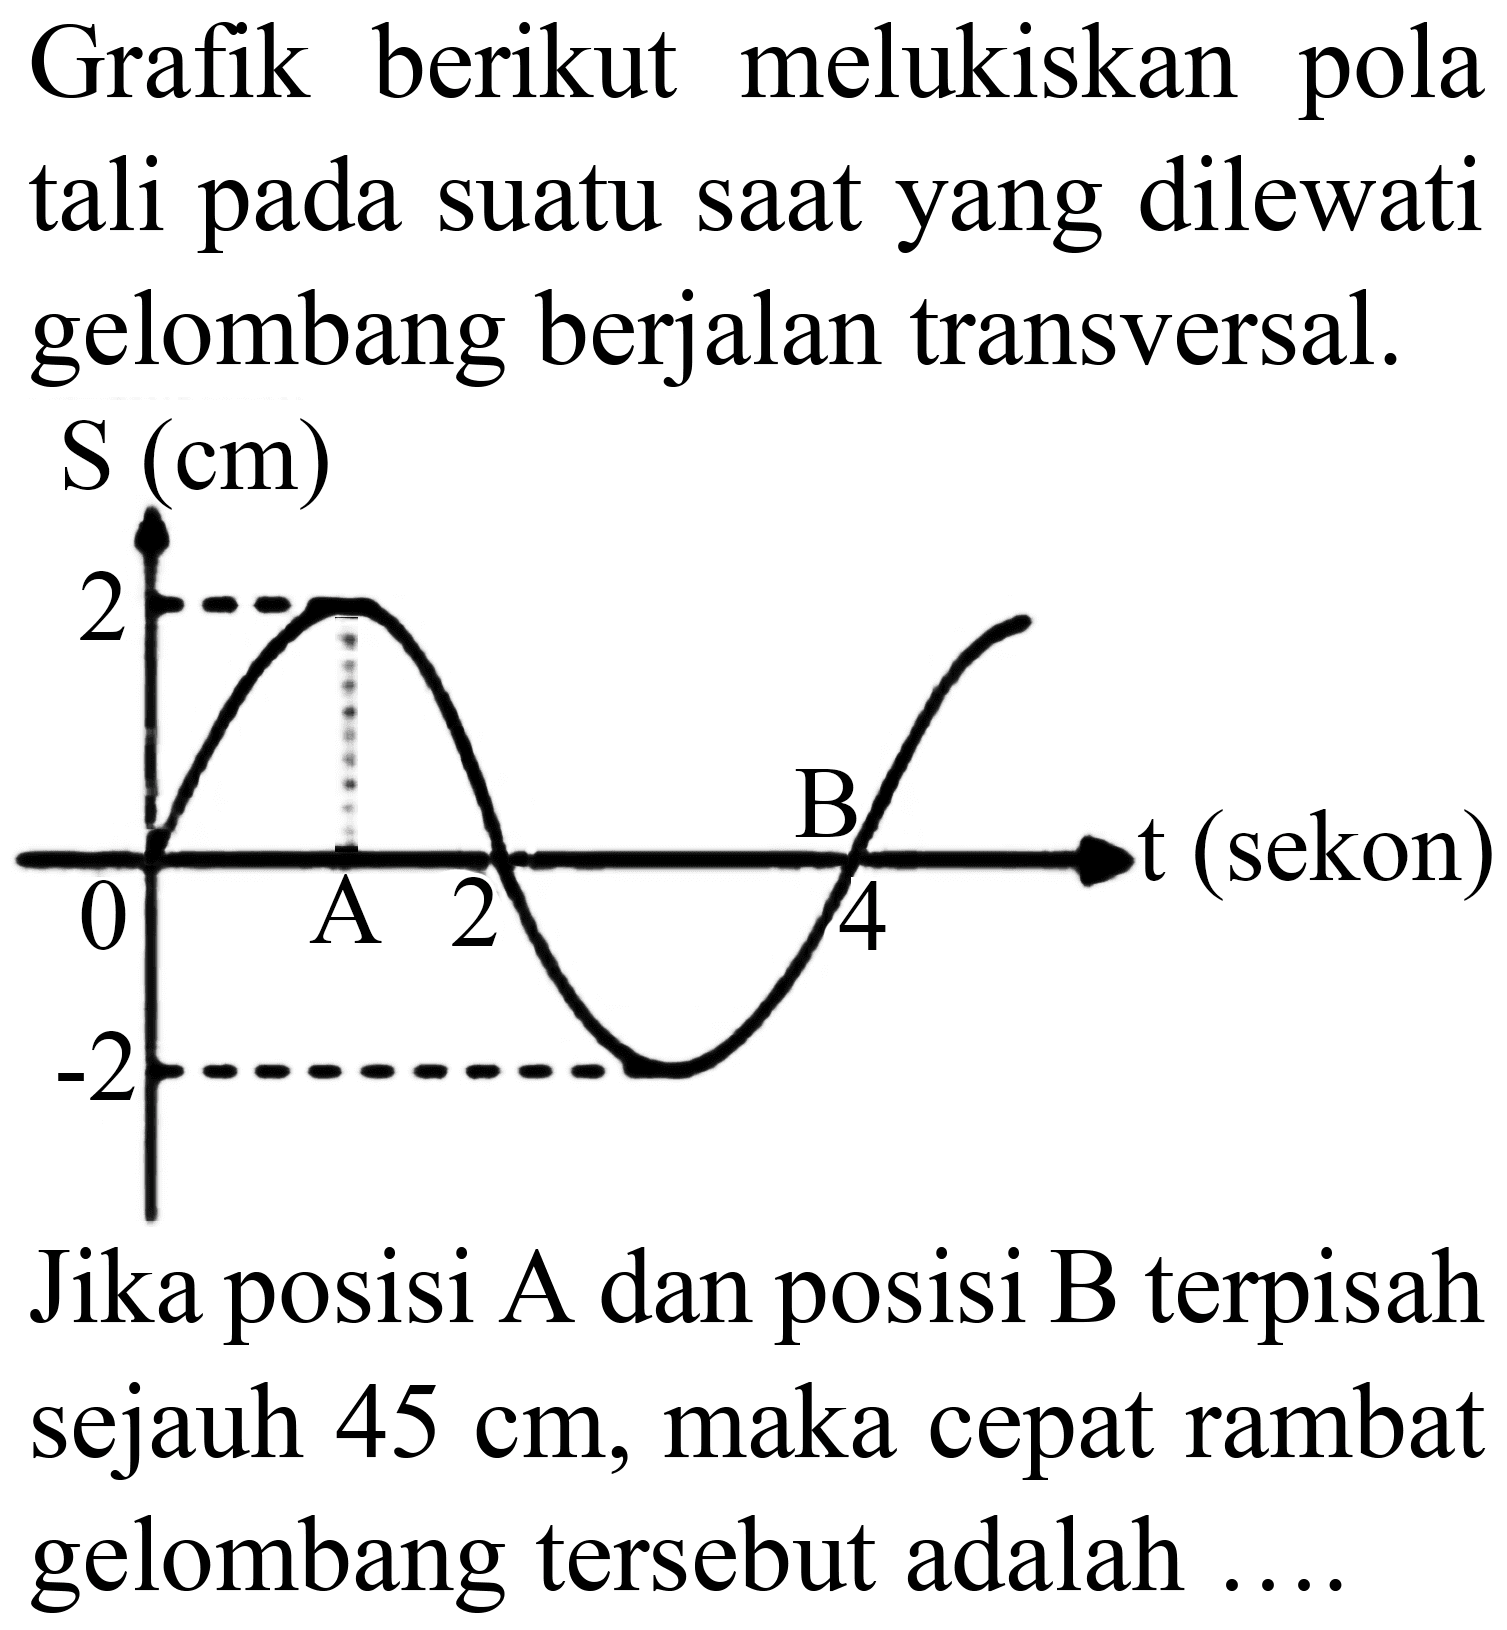 Grafik berikut melukiskan pola tali pada suatu saat yang dilewati gelombang berjalan transversal.
 S(cm) 
Jika posisi A dan posisi B terpisah sejauh  45 cm , maka cepat rambat gelombang tersebut adalah  ... . 